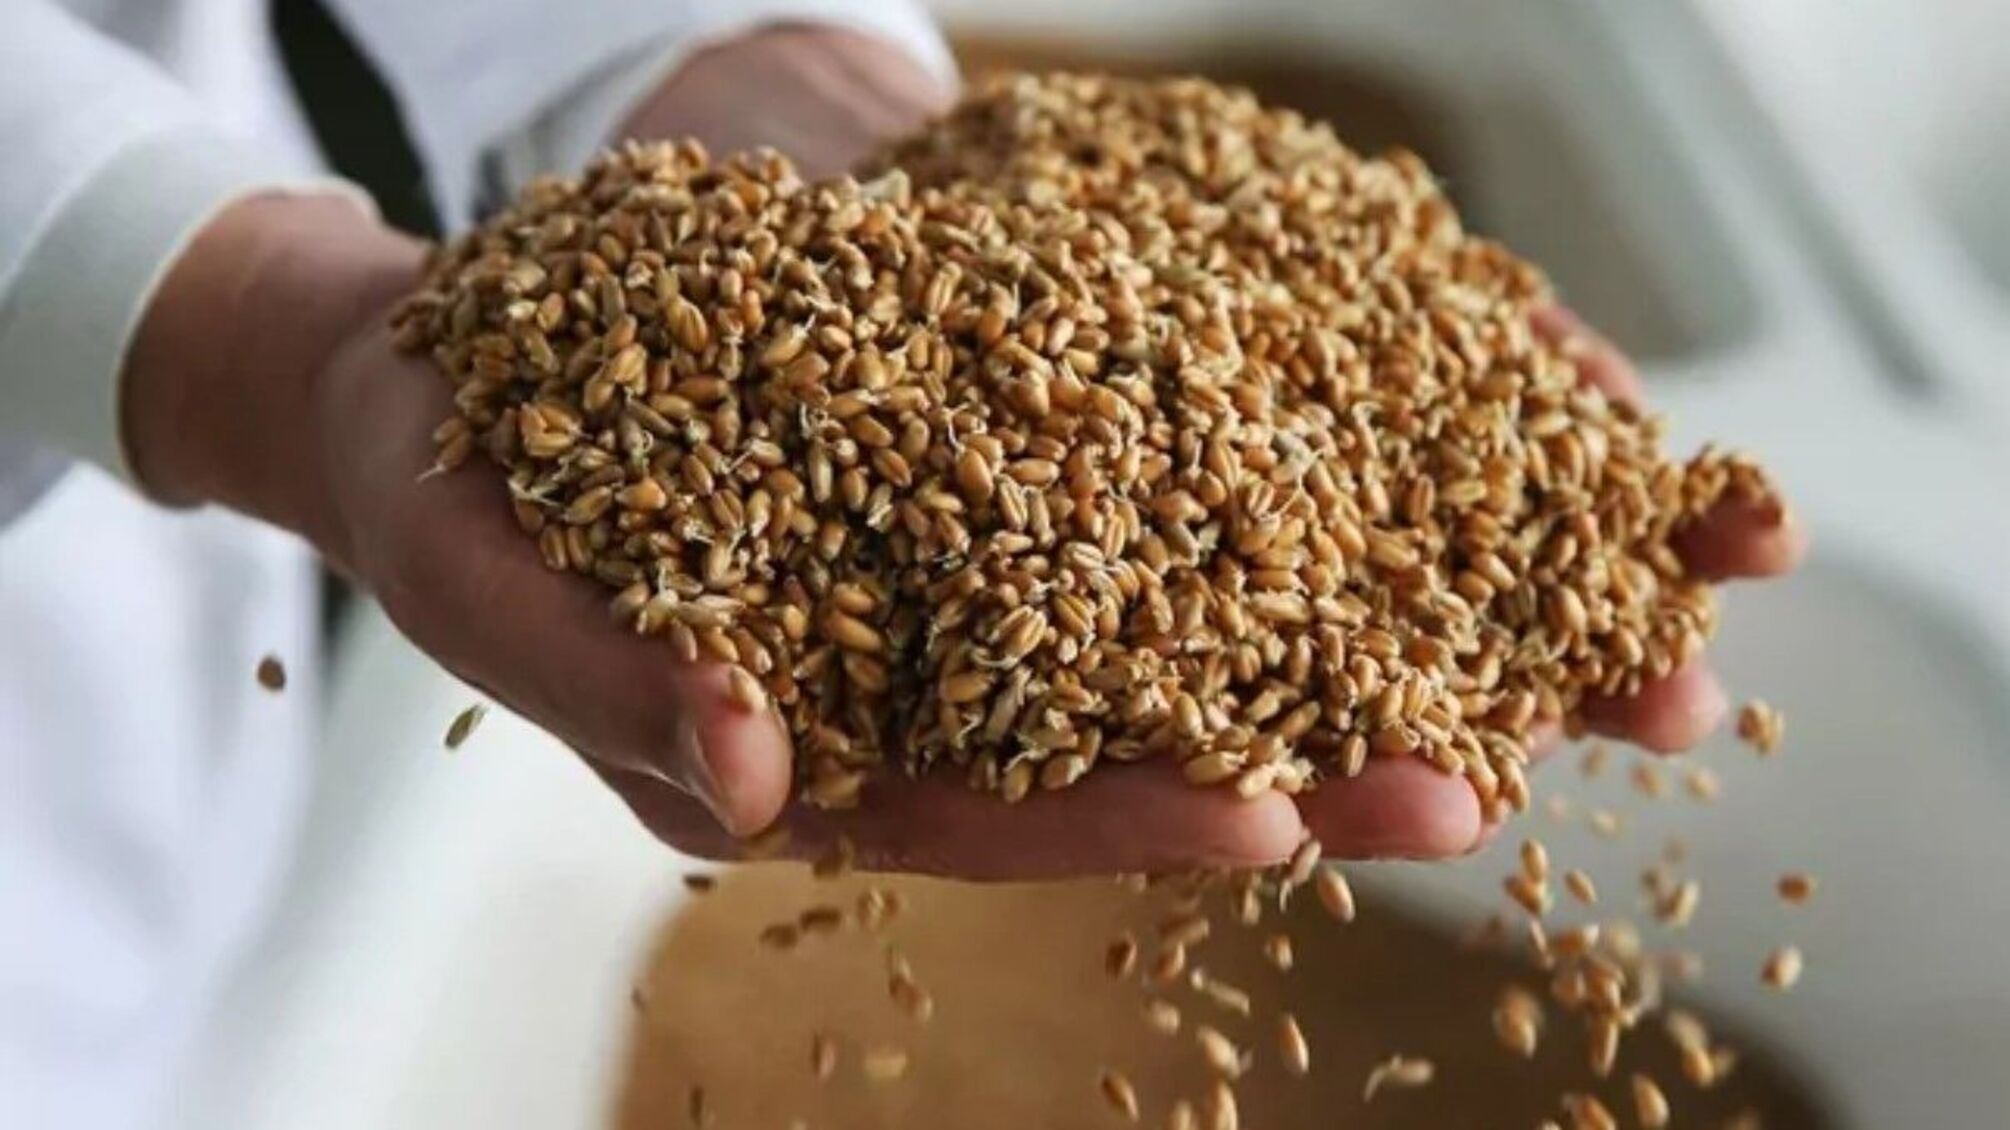 Эксуправление госпредприятия будут судить за растрату зерна более чем на 4 миллиона гривен